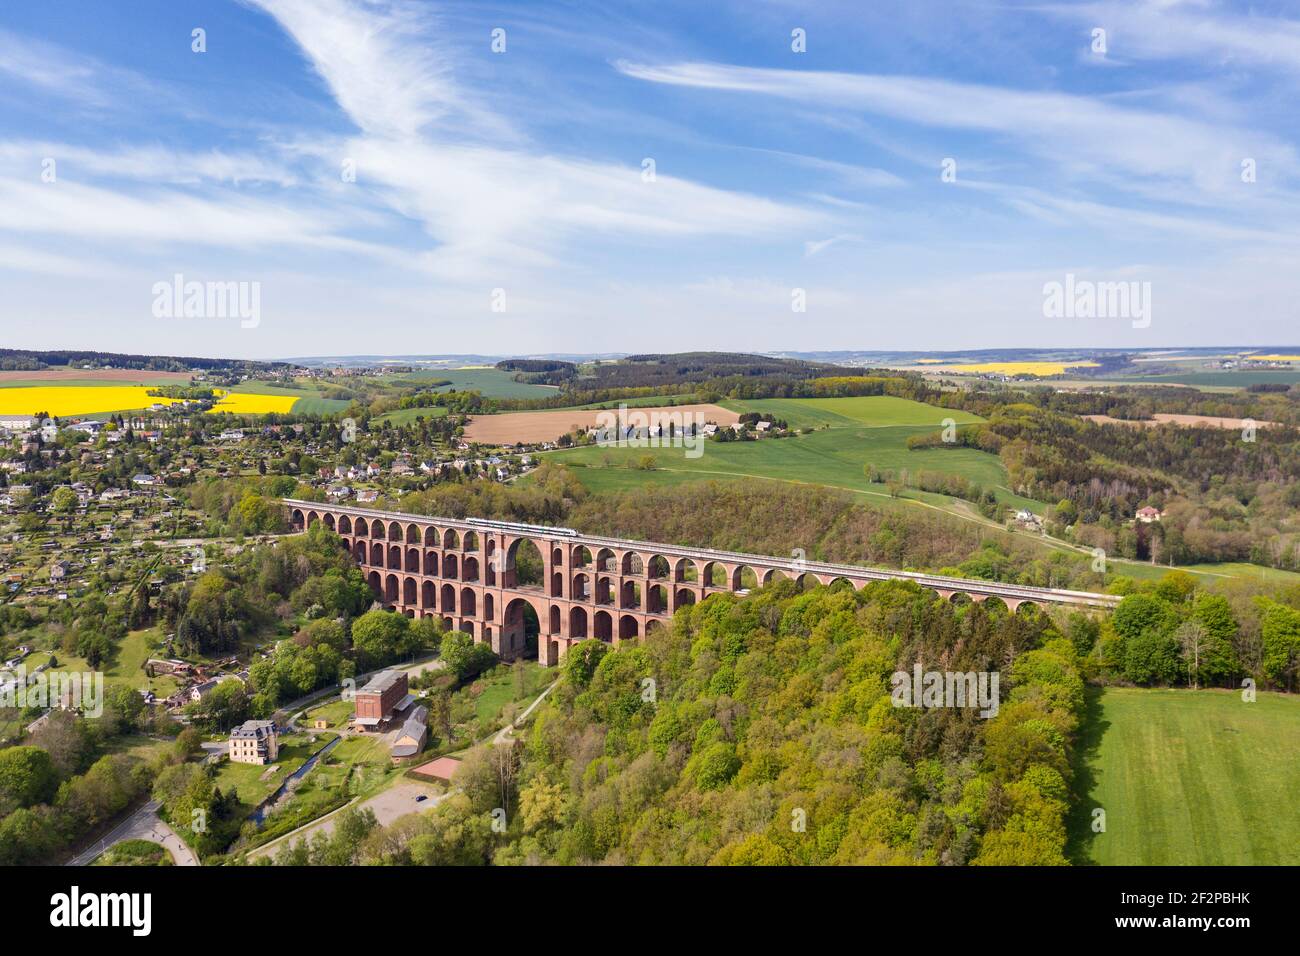 Plus grand pont d'arche en briques au monde (574 m de long, 78 m de haut) train, maisons, vallée, forêt Banque D'Images